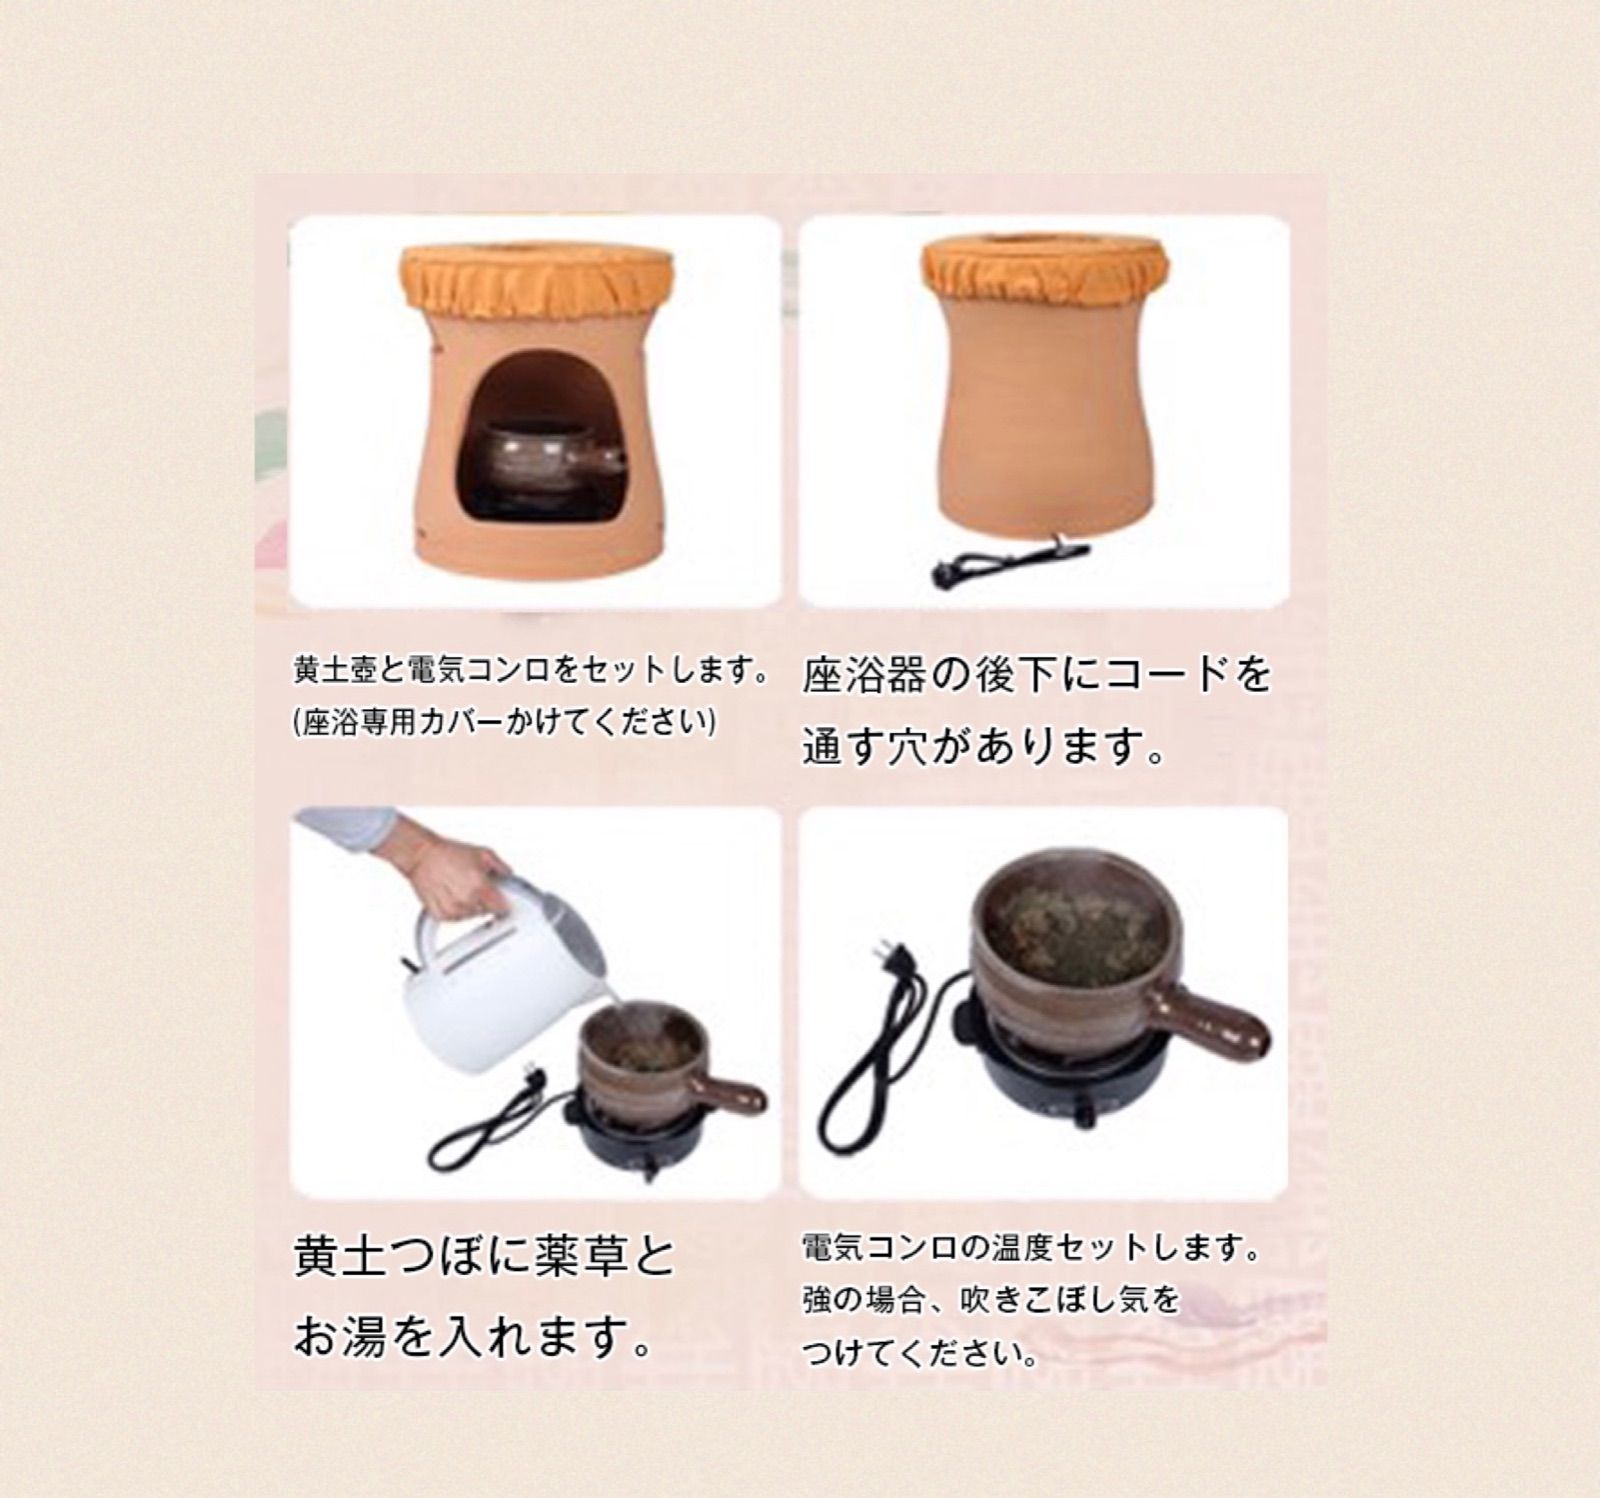 黄土壺・電気コンロセット【取手あり】よもぎ蒸し専用 - メルカリ